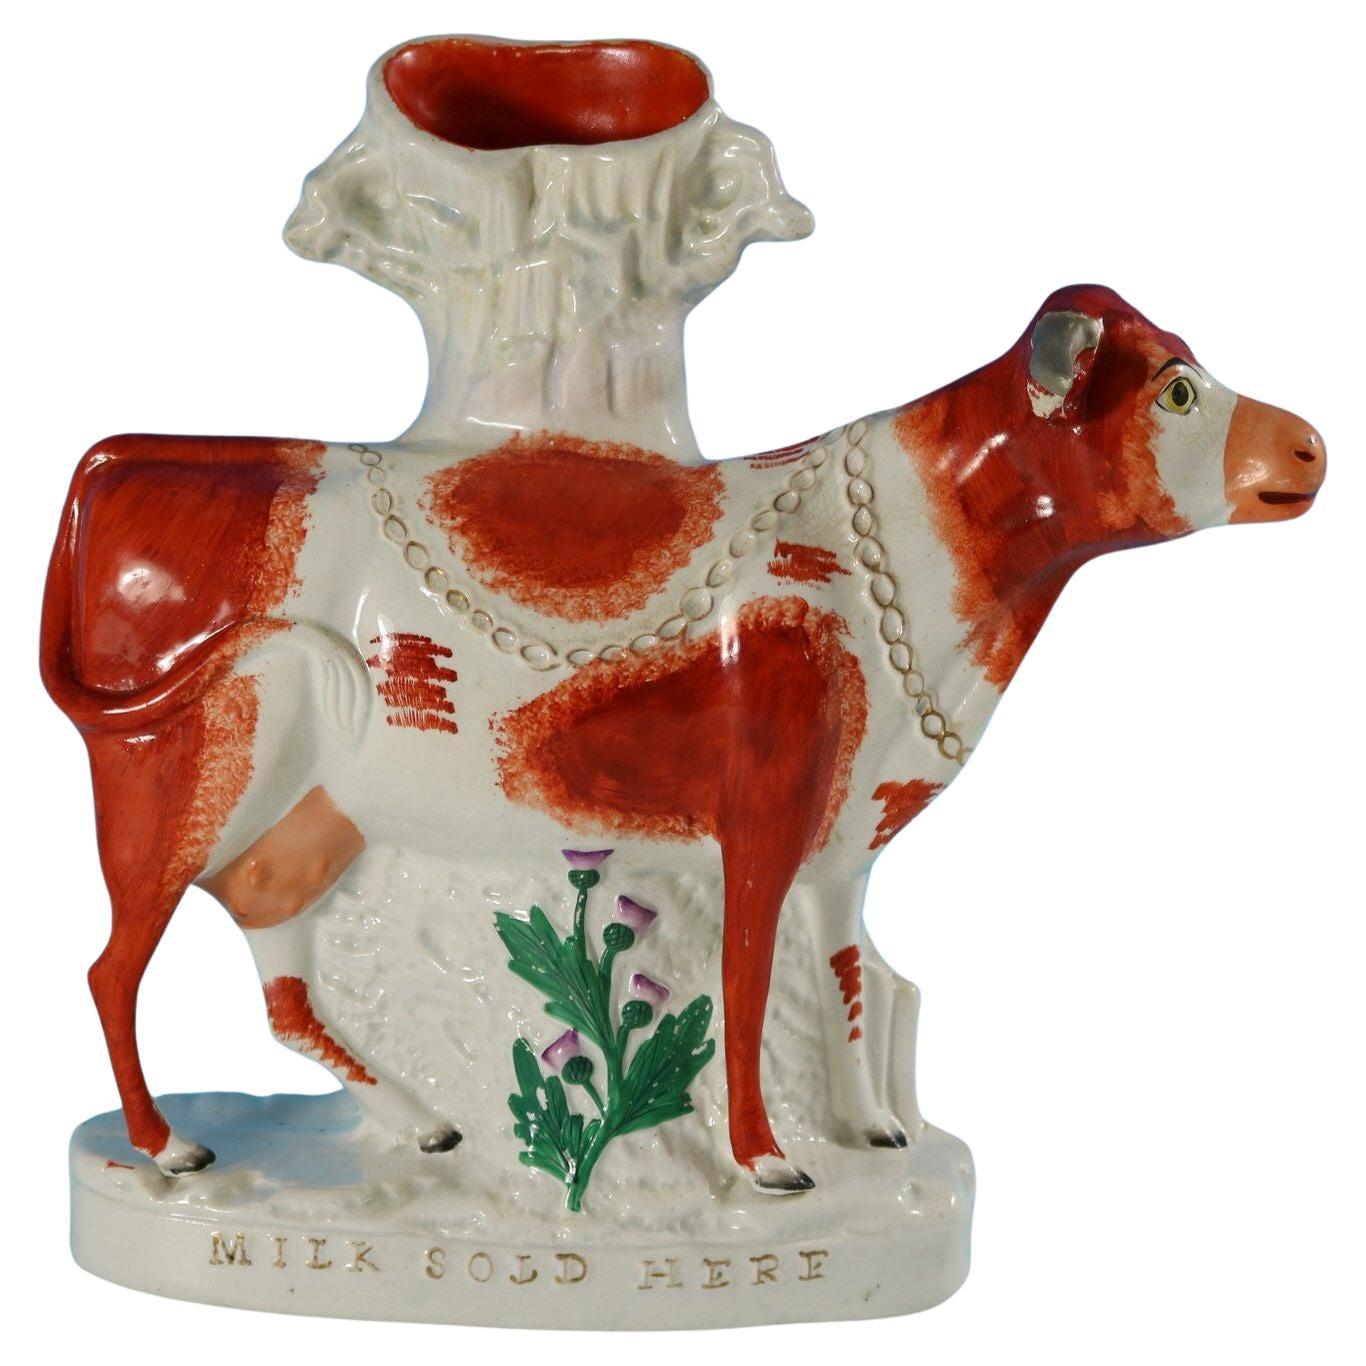 Vase à vache "Milk Sold Here" en poterie du Staffordshire